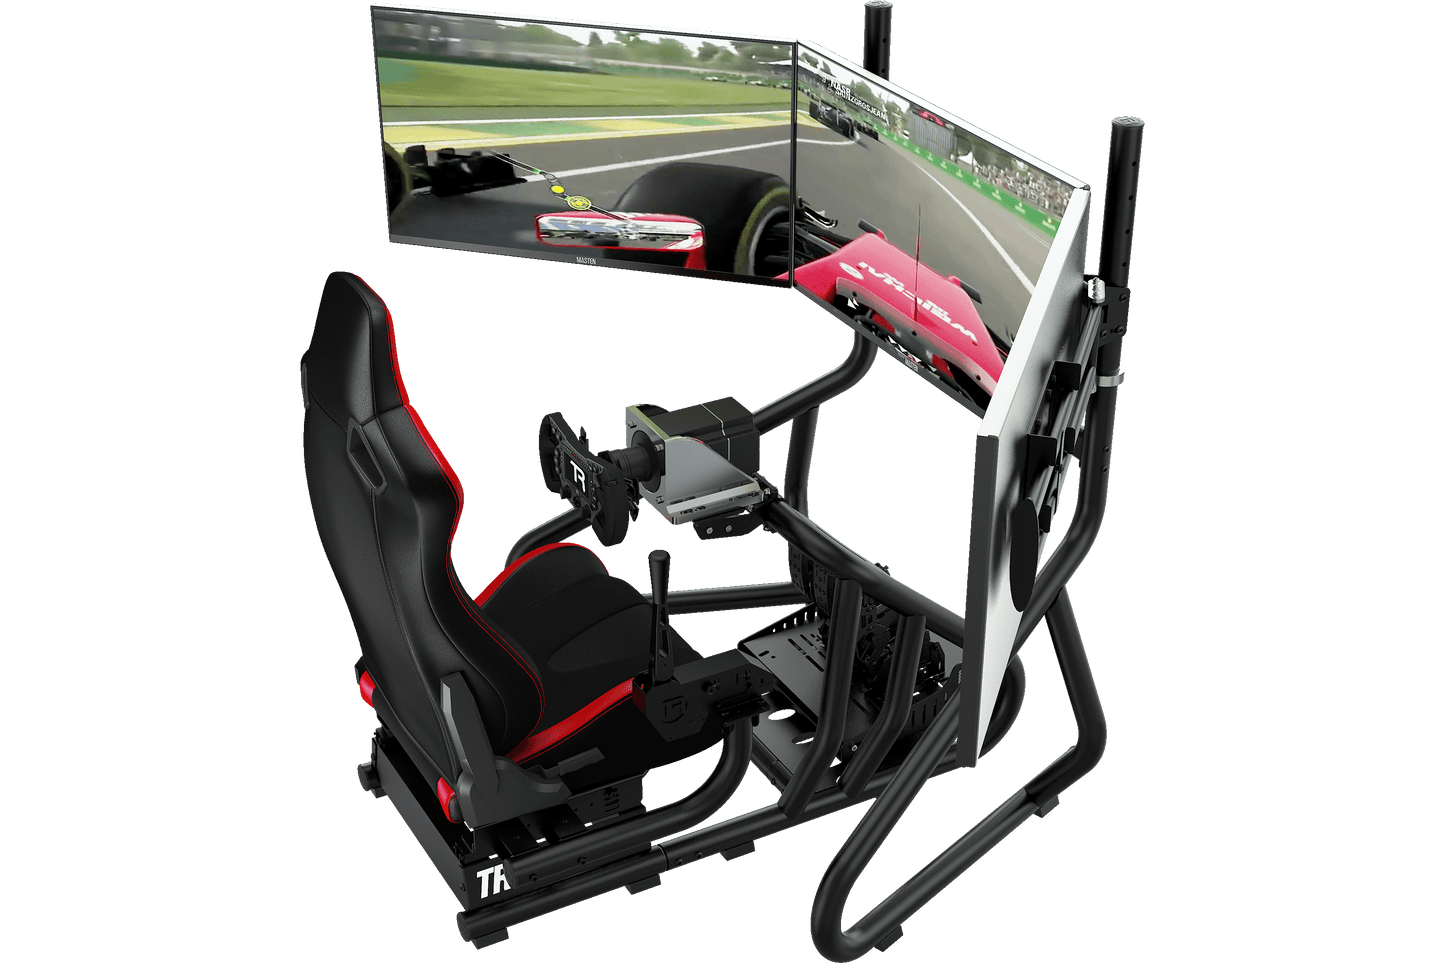 Trak Racer RS6 Racing Simulator